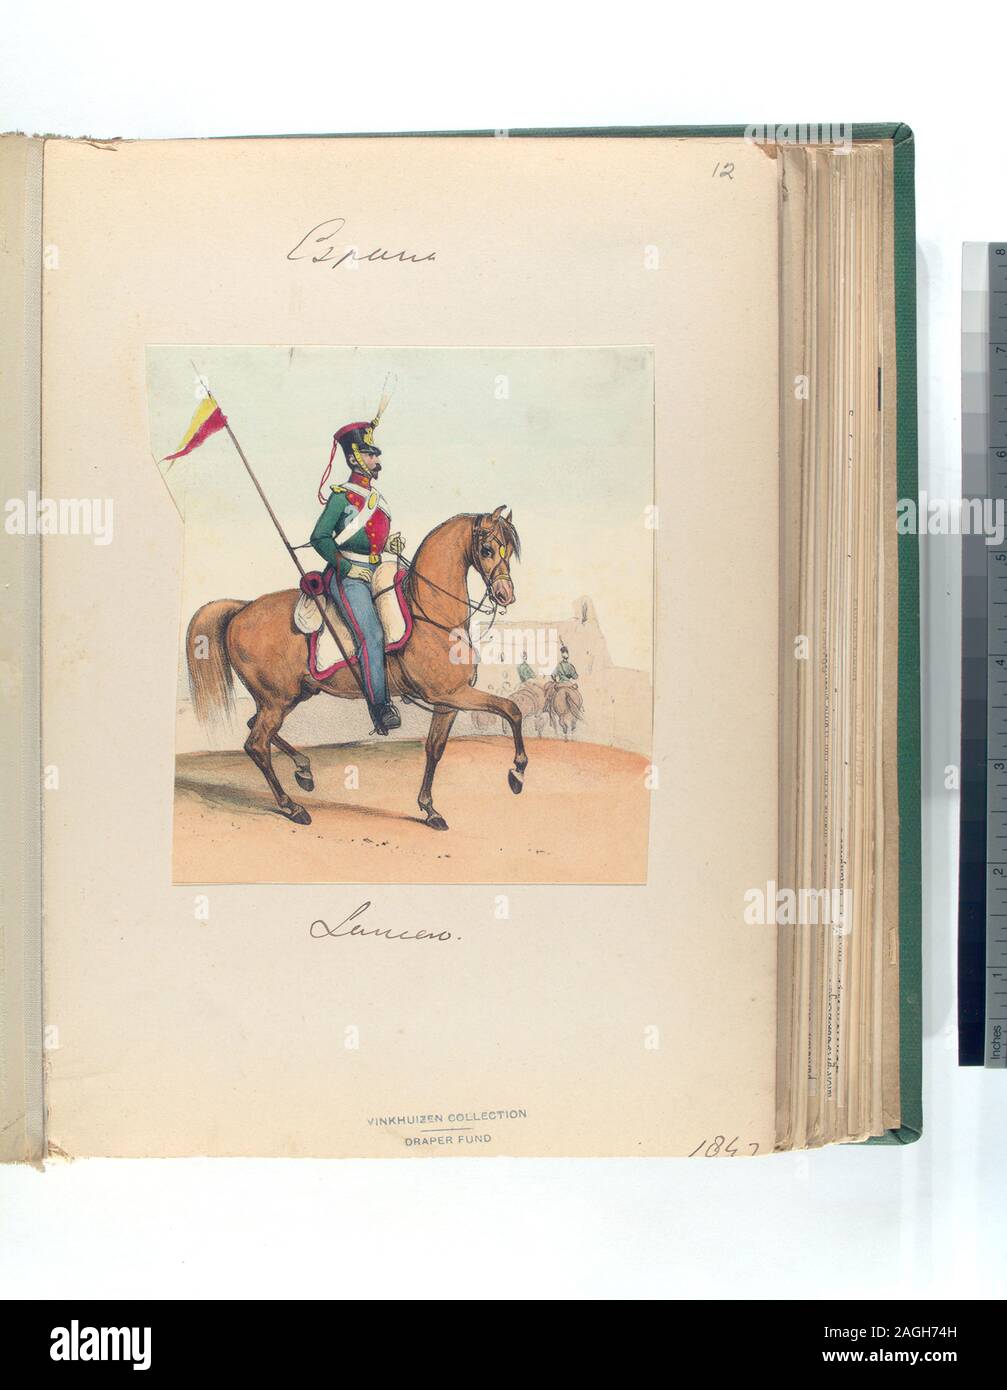 Fonds du tapis ; Lancero. 1847 Banque D'Images